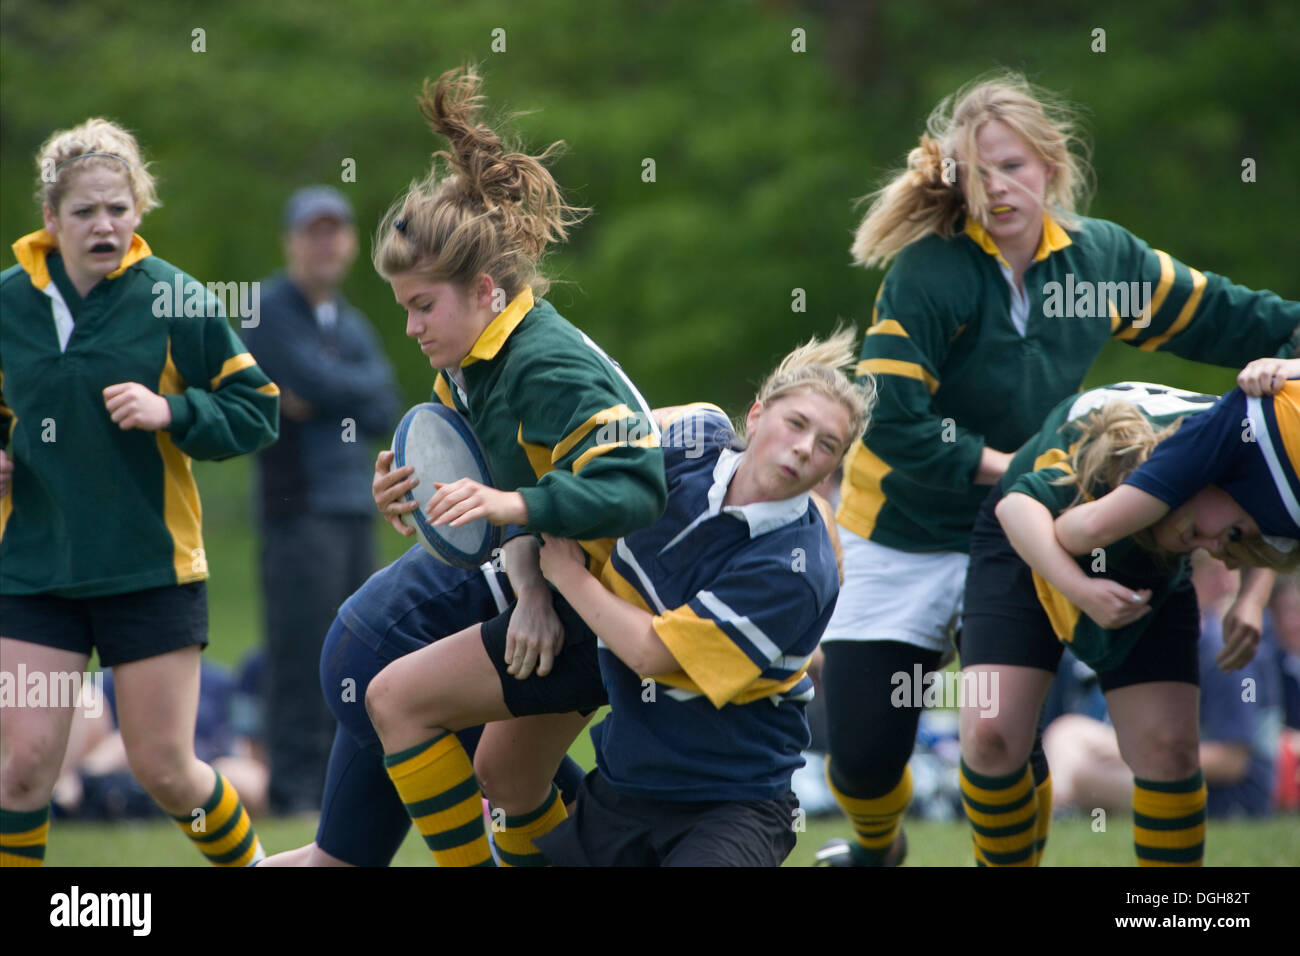 Ragazza di essere affrontati nella partita di rugby Foto Stock